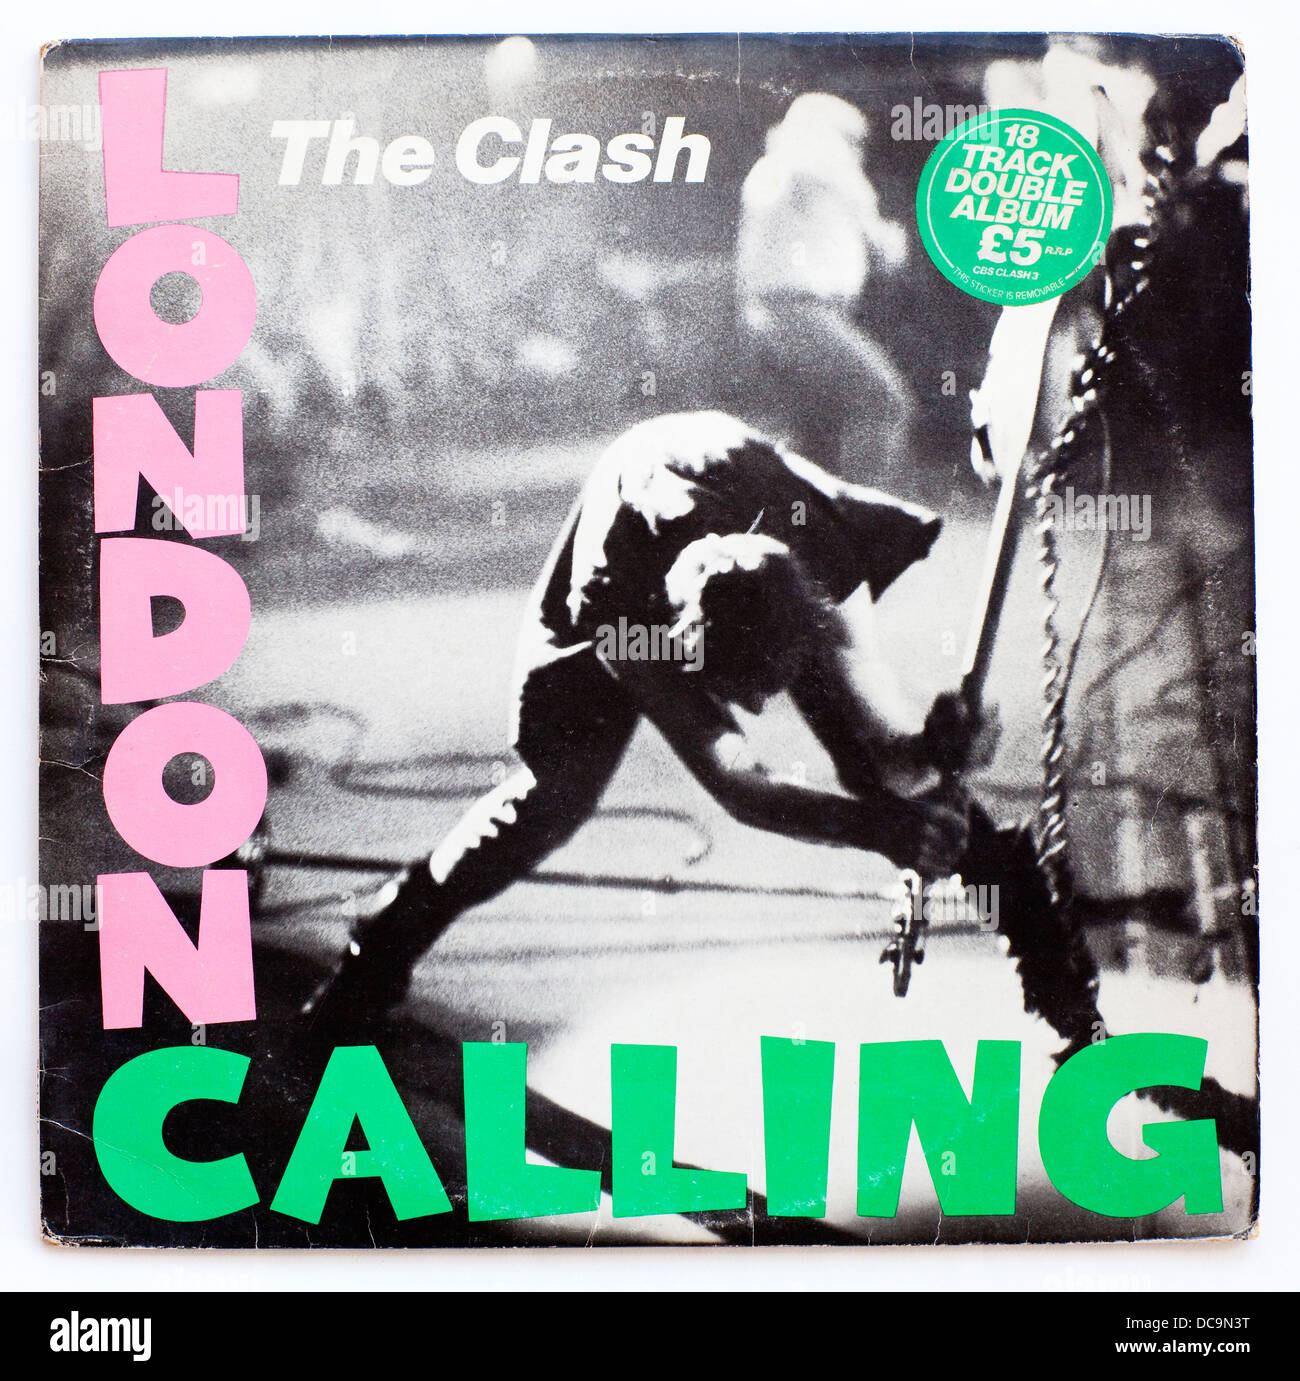 The Clash - London Calling, 1979 double album sur CBS Records - usage éditorial uniquement Banque D'Images